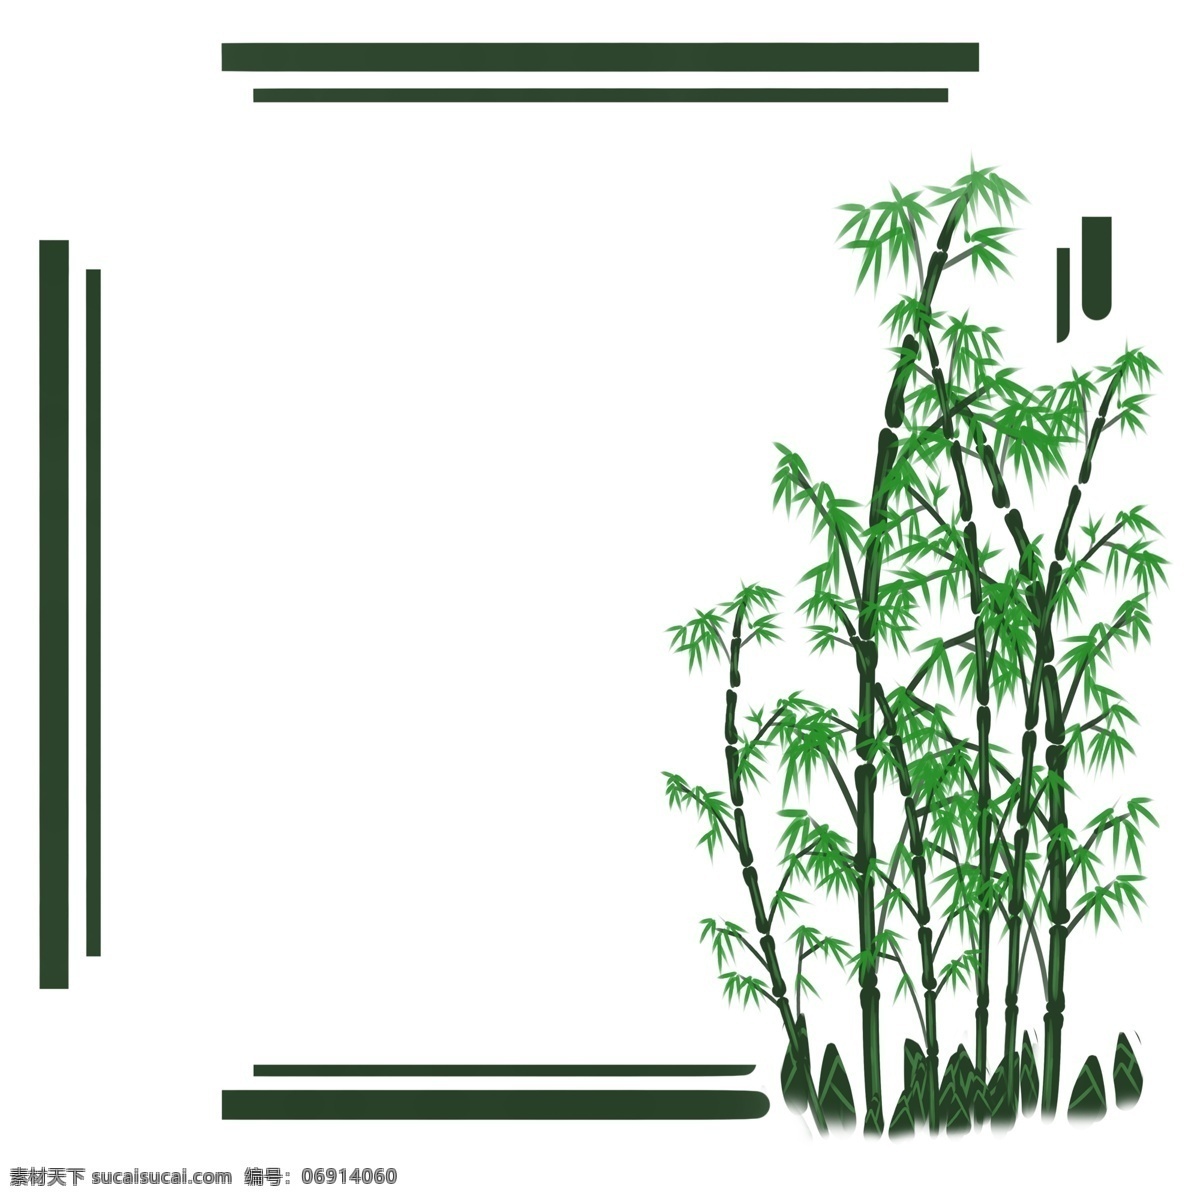 边框 植物 竹子 清淡 绿色 彩带 清新 卡通风格 童话风格 装饰画 淡雅 颜色搭配 暖色调 点缀 配饰 纹路 纹理 装饰物